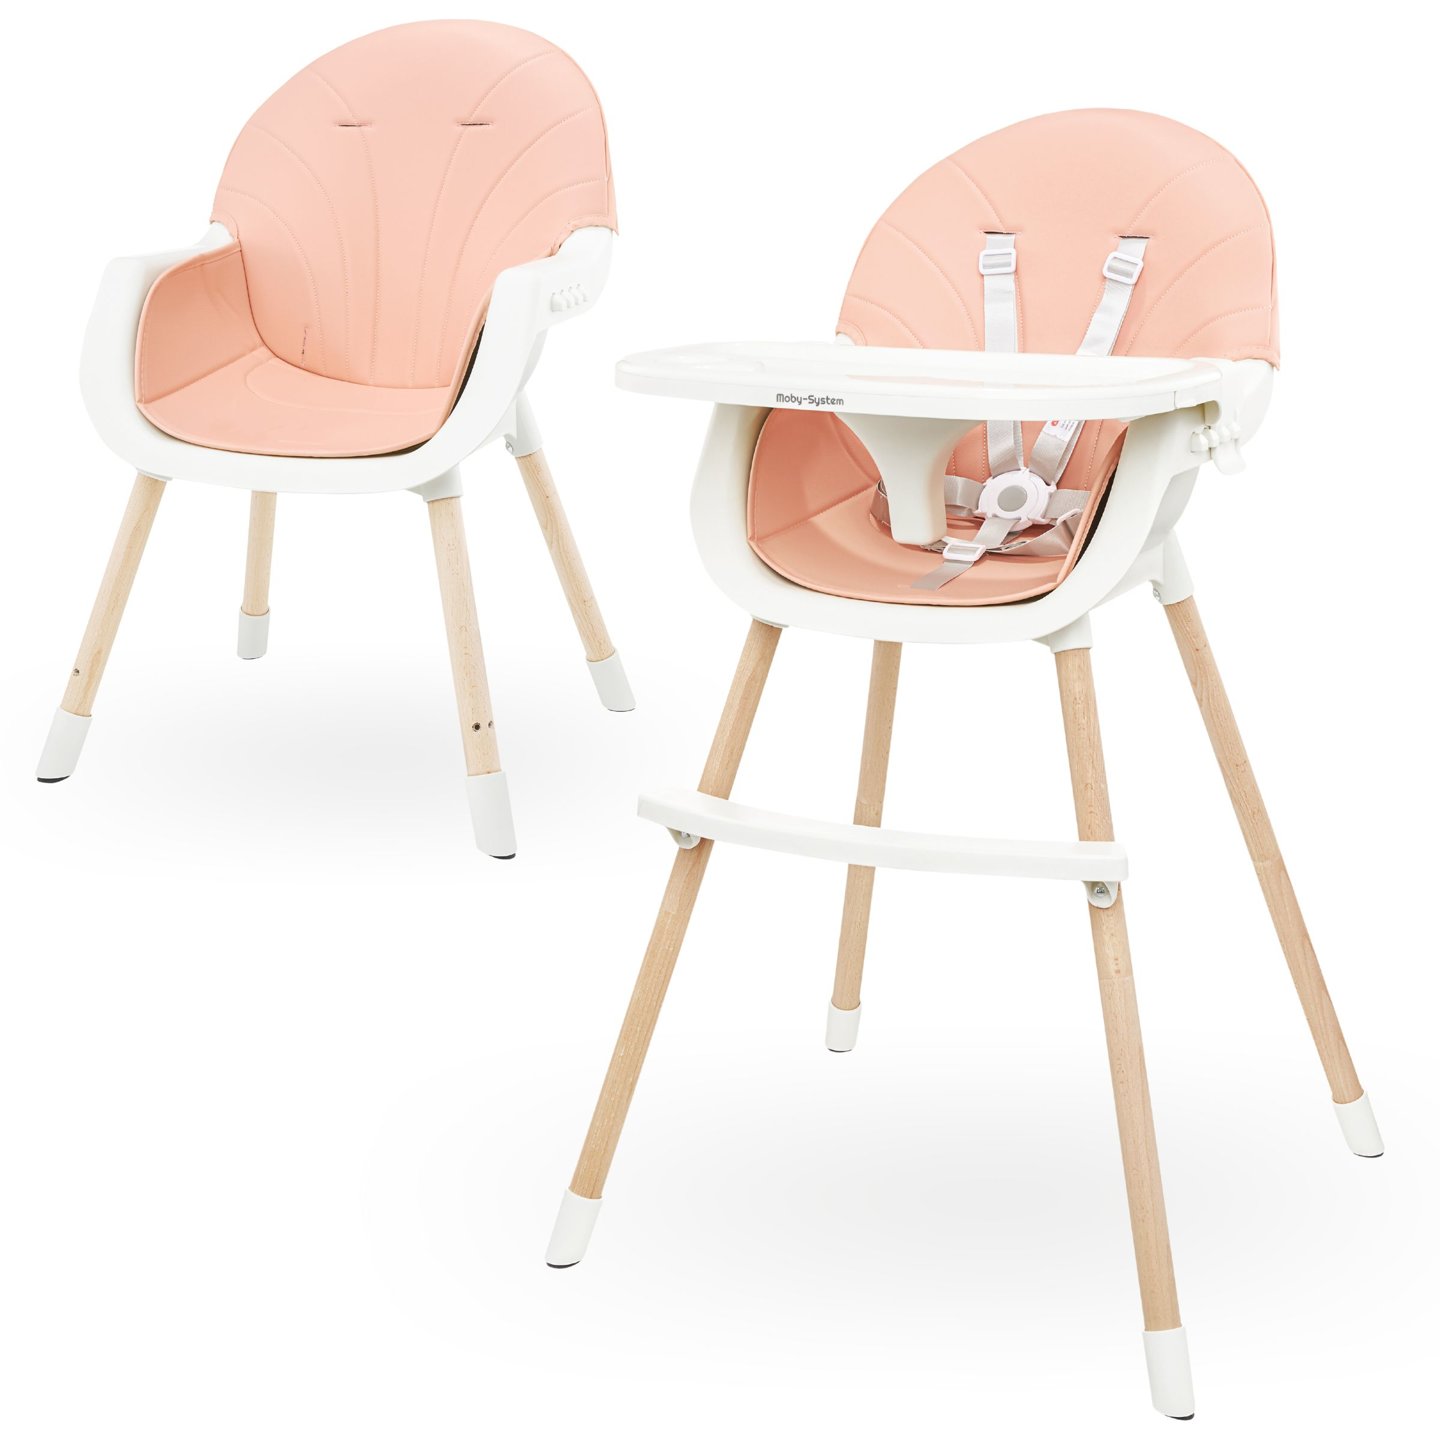 Kojicí židle AMELIA 3v1 Moby-Systém, růžová